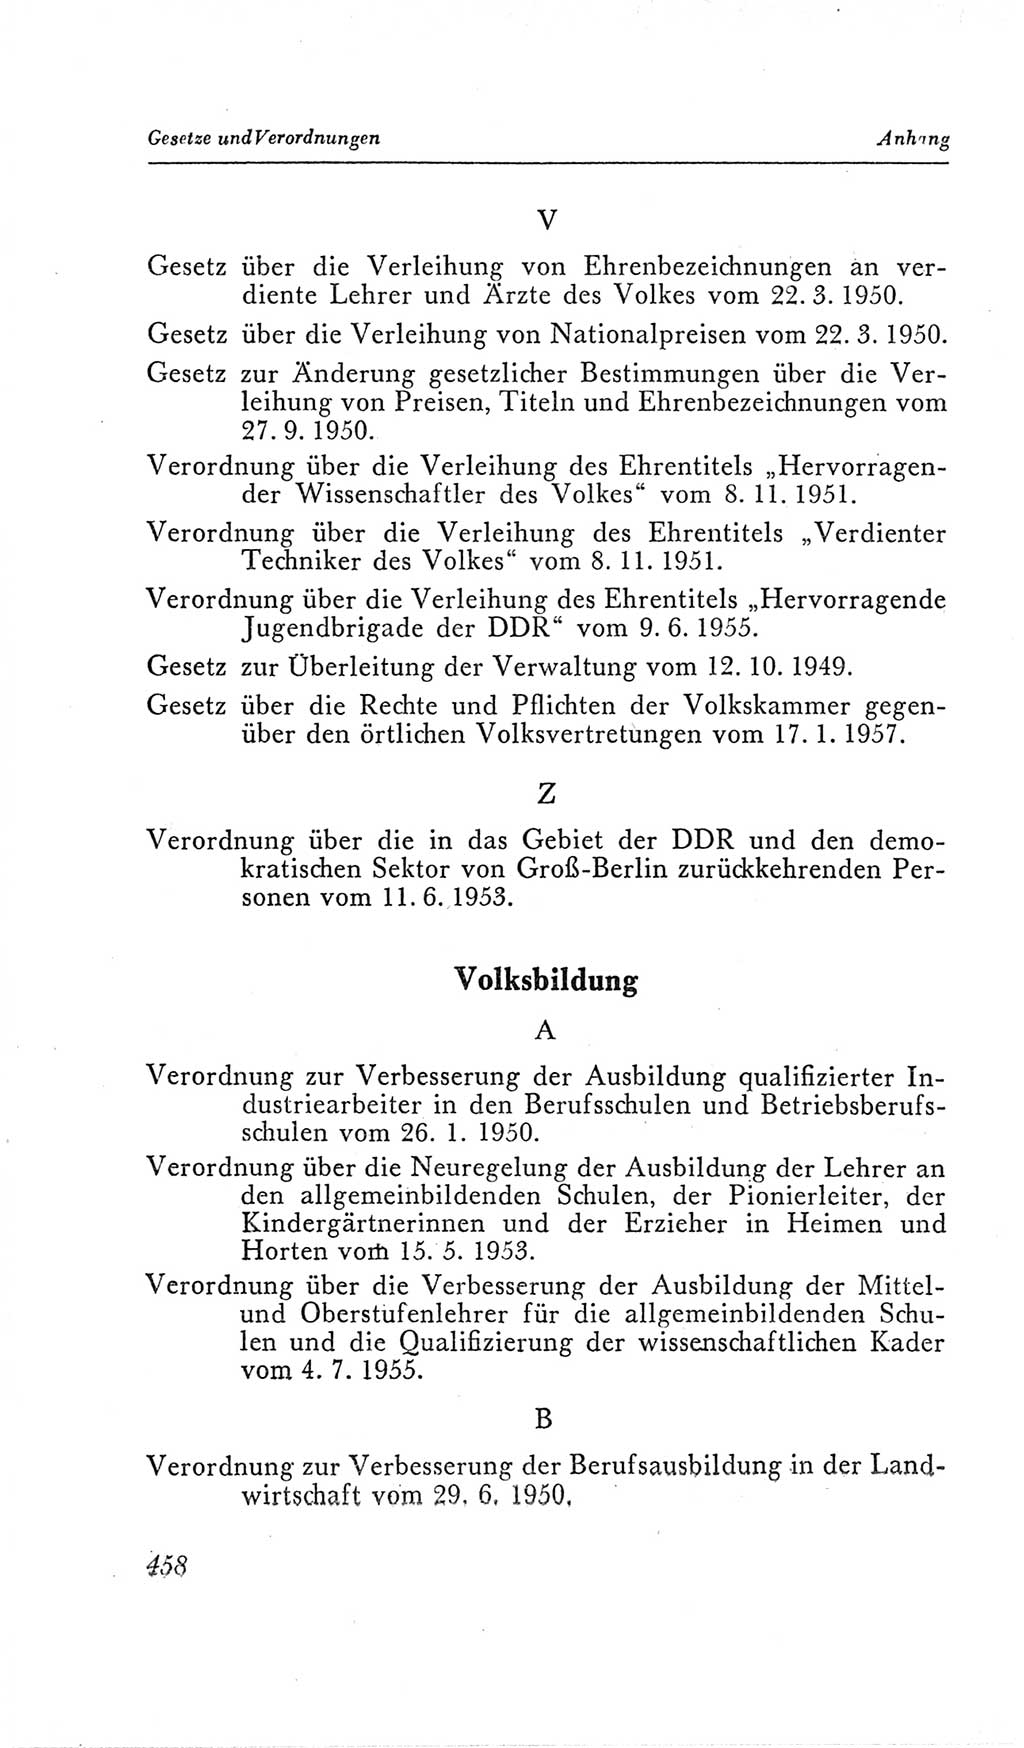 Handbuch der Volkskammer (VK) der Deutschen Demokratischen Republik (DDR), 2. Wahlperiode 1954-1958, Seite 458 (Hdb. VK. DDR, 2. WP. 1954-1958, S. 458)